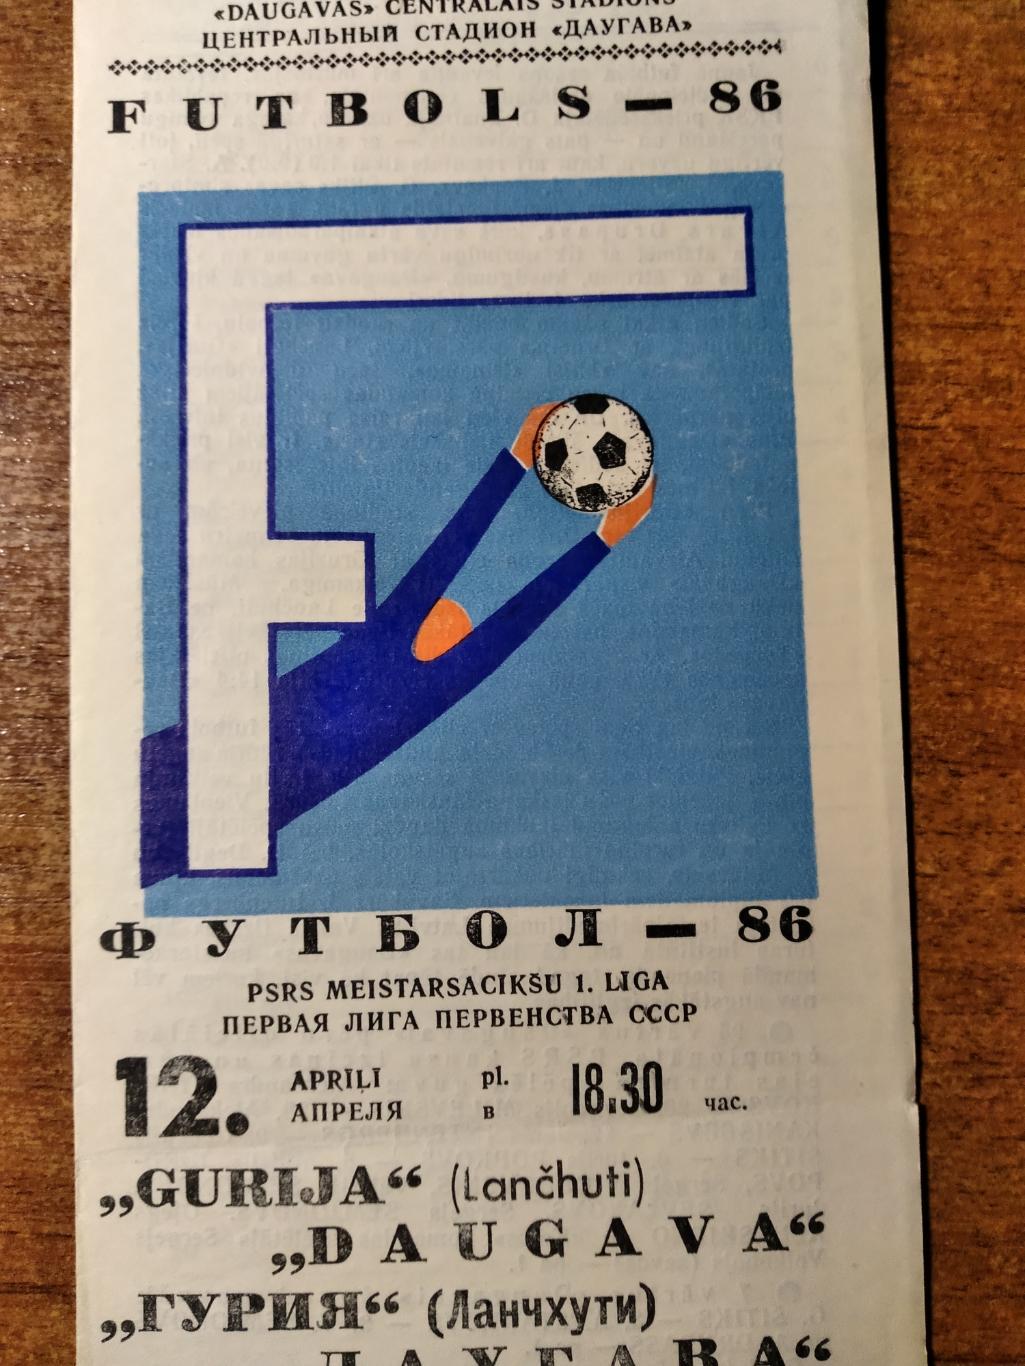 ПрограммаДаугава(Рига)-Гу рия(Ланчхути) Первая лига СССР 1986г.